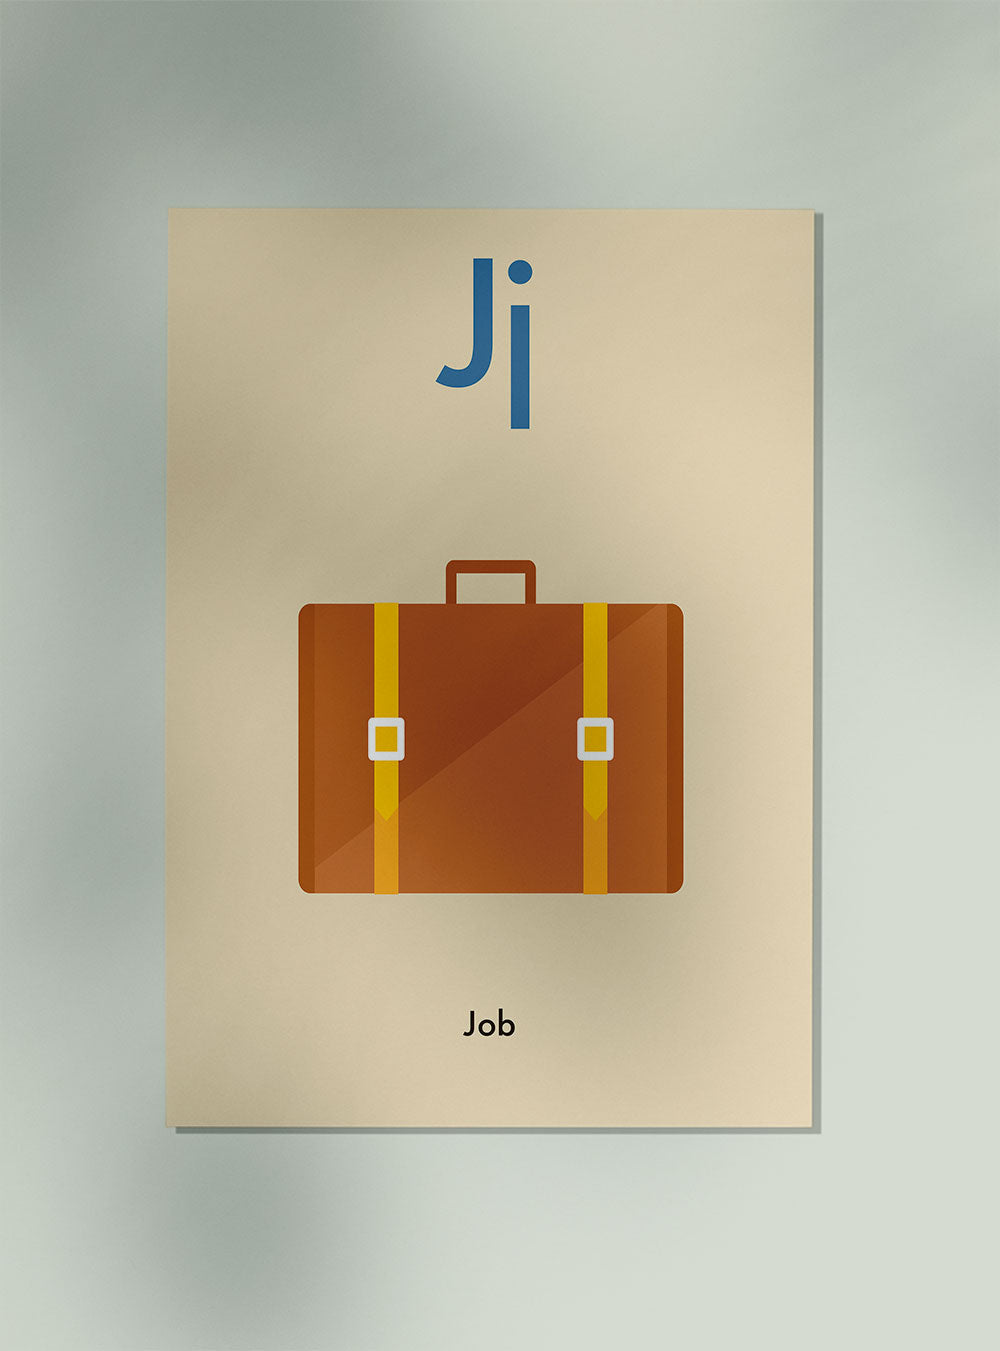 J for Job - Children's Alphabet Poster in English